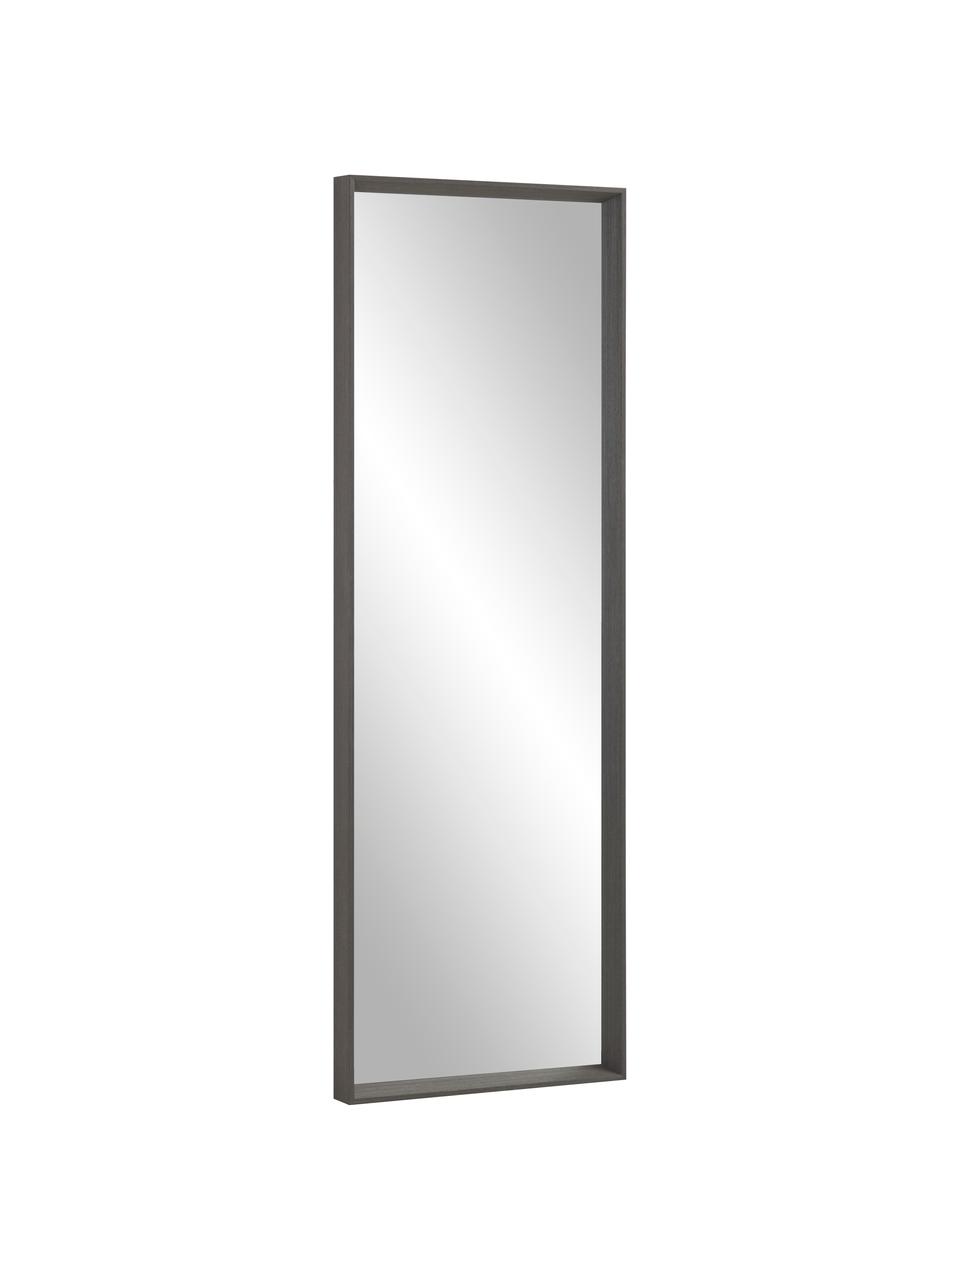 Eckiger Wandspiegel Nerina mit dunkelbraunem Holzrahmen, Rahmen: Holz, Spiegelfläche: Spiegelglas, Braun , B 52 x H 152 cm